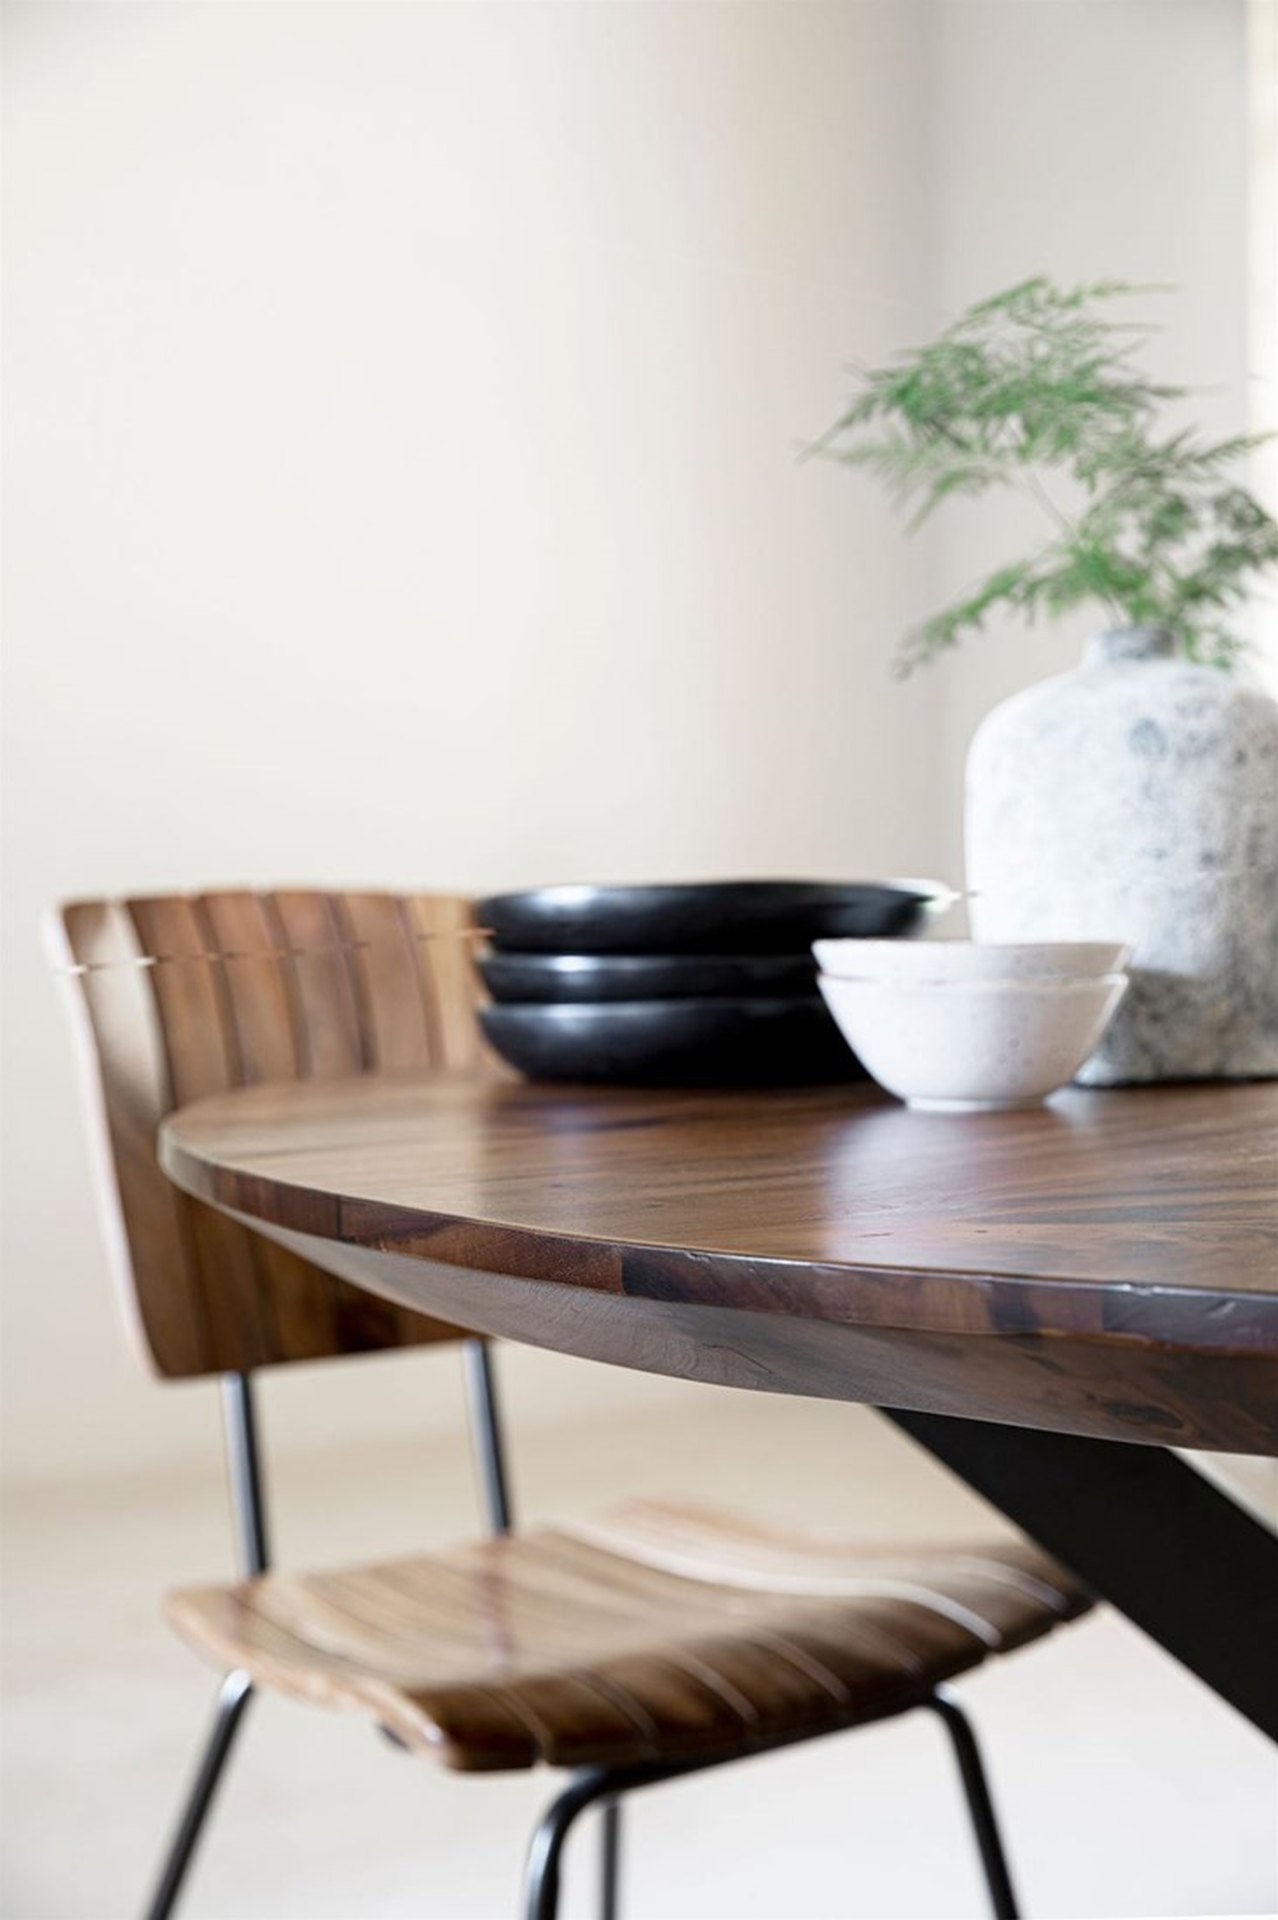 Der Esstisch Flare wurde aus massivem Suar Holz gefertigt, welches einen natürlichen Farbton besitzt. Das Gestell ist aus Metall und besitzt eine schwarze Farbe. Der Esstisch überzeugt mit seinem industriellem aber auch massivem Design. Der Tisch hat durc